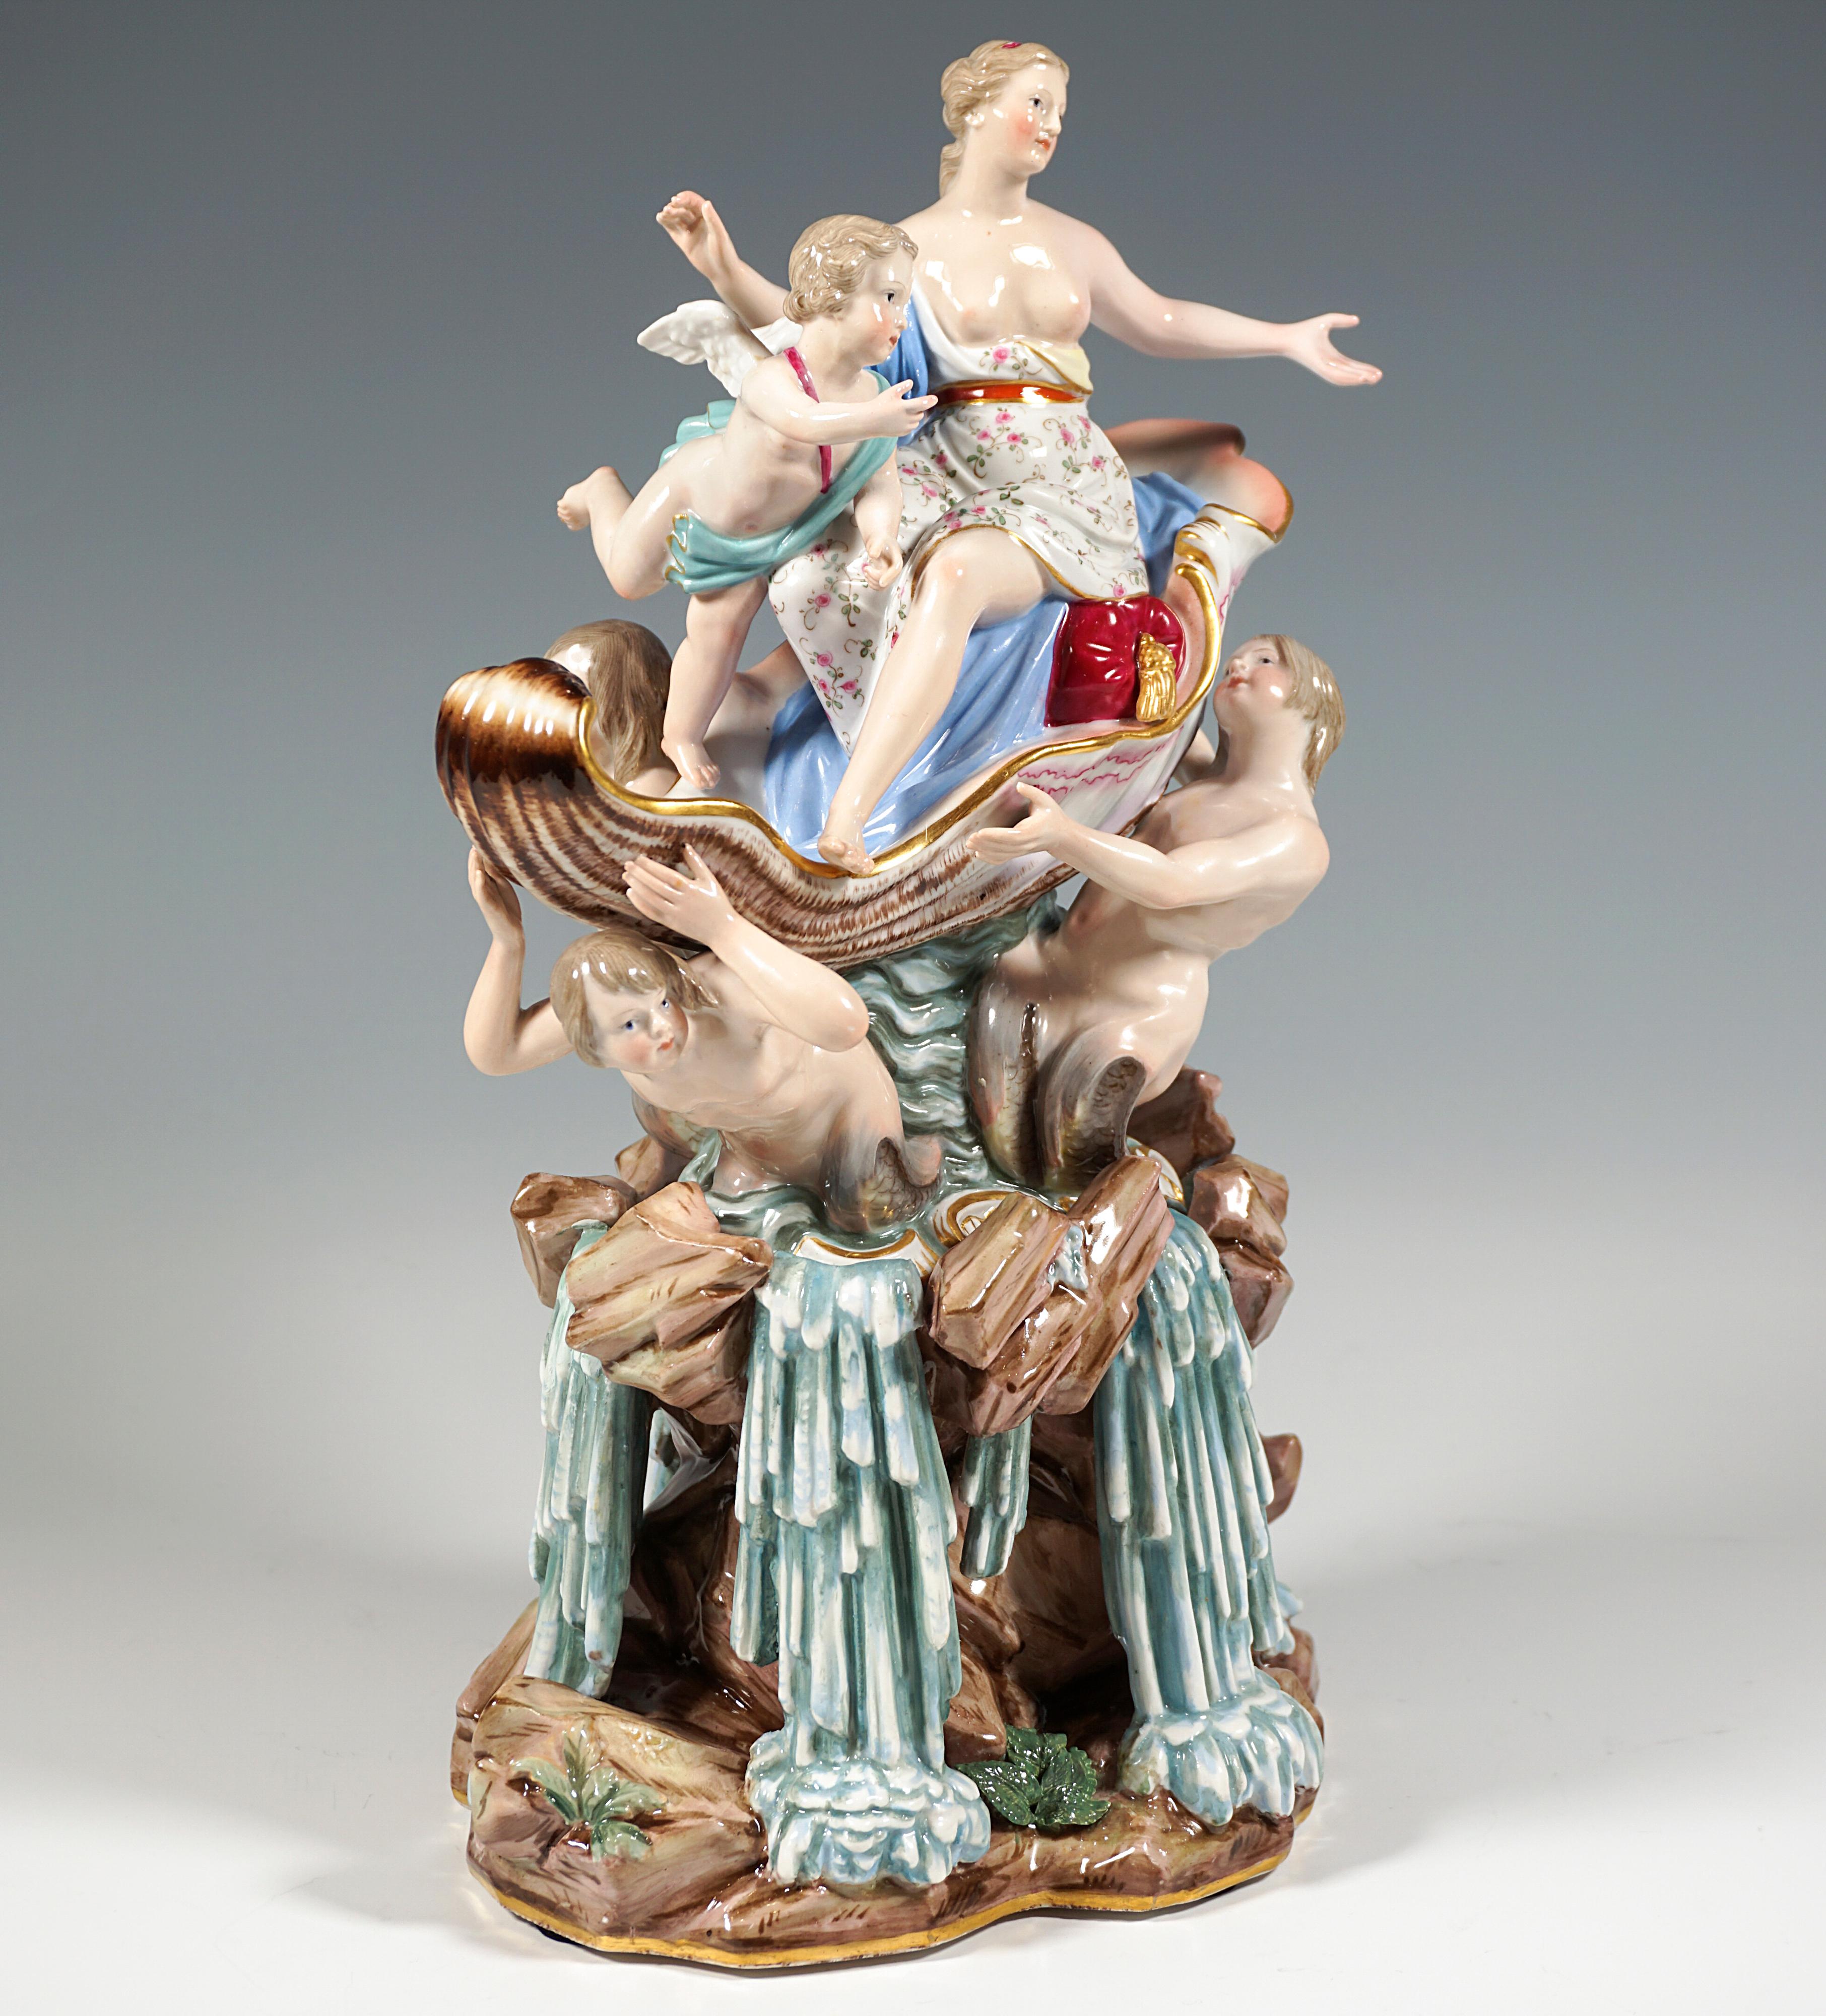 Rare et excellente sculpture en porcelaine :
Représentation de Vénus, la déesse romaine de l'amour et de la beauté (Aphrodite en grec), sous les traits d'une jeune femme aux cheveux attachés sur la nuque, couverte d'un châle légèrement drapé, le